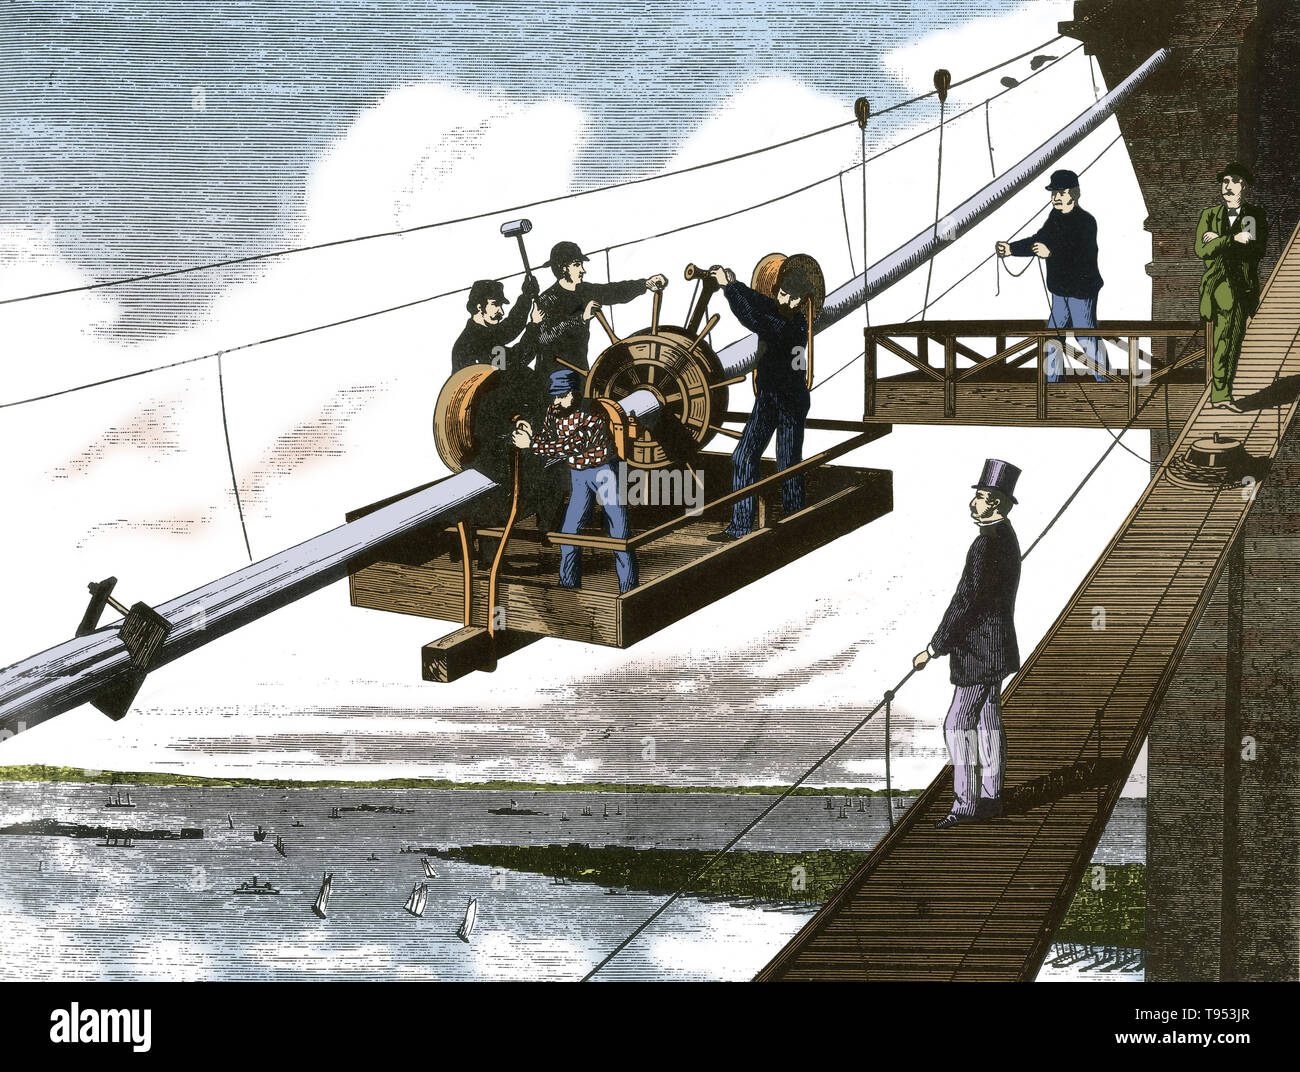 Un intreccio di funi di sospensione. Il Ponte di Brooklyn è uno dei più antichi ponti di sospensione negli Stati Uniti. Completato nel 1883, si collega il distretto di Manhattan e Brooklyn dal spanning l'East River. Con un intervallo principale del 1,595.5 piedi, era il più lungo ponte sospeso in tutto il mondo dalla sua apertura fino al 1903, e il primo filo d'acciaio ponte di sospensione. Foto Stock